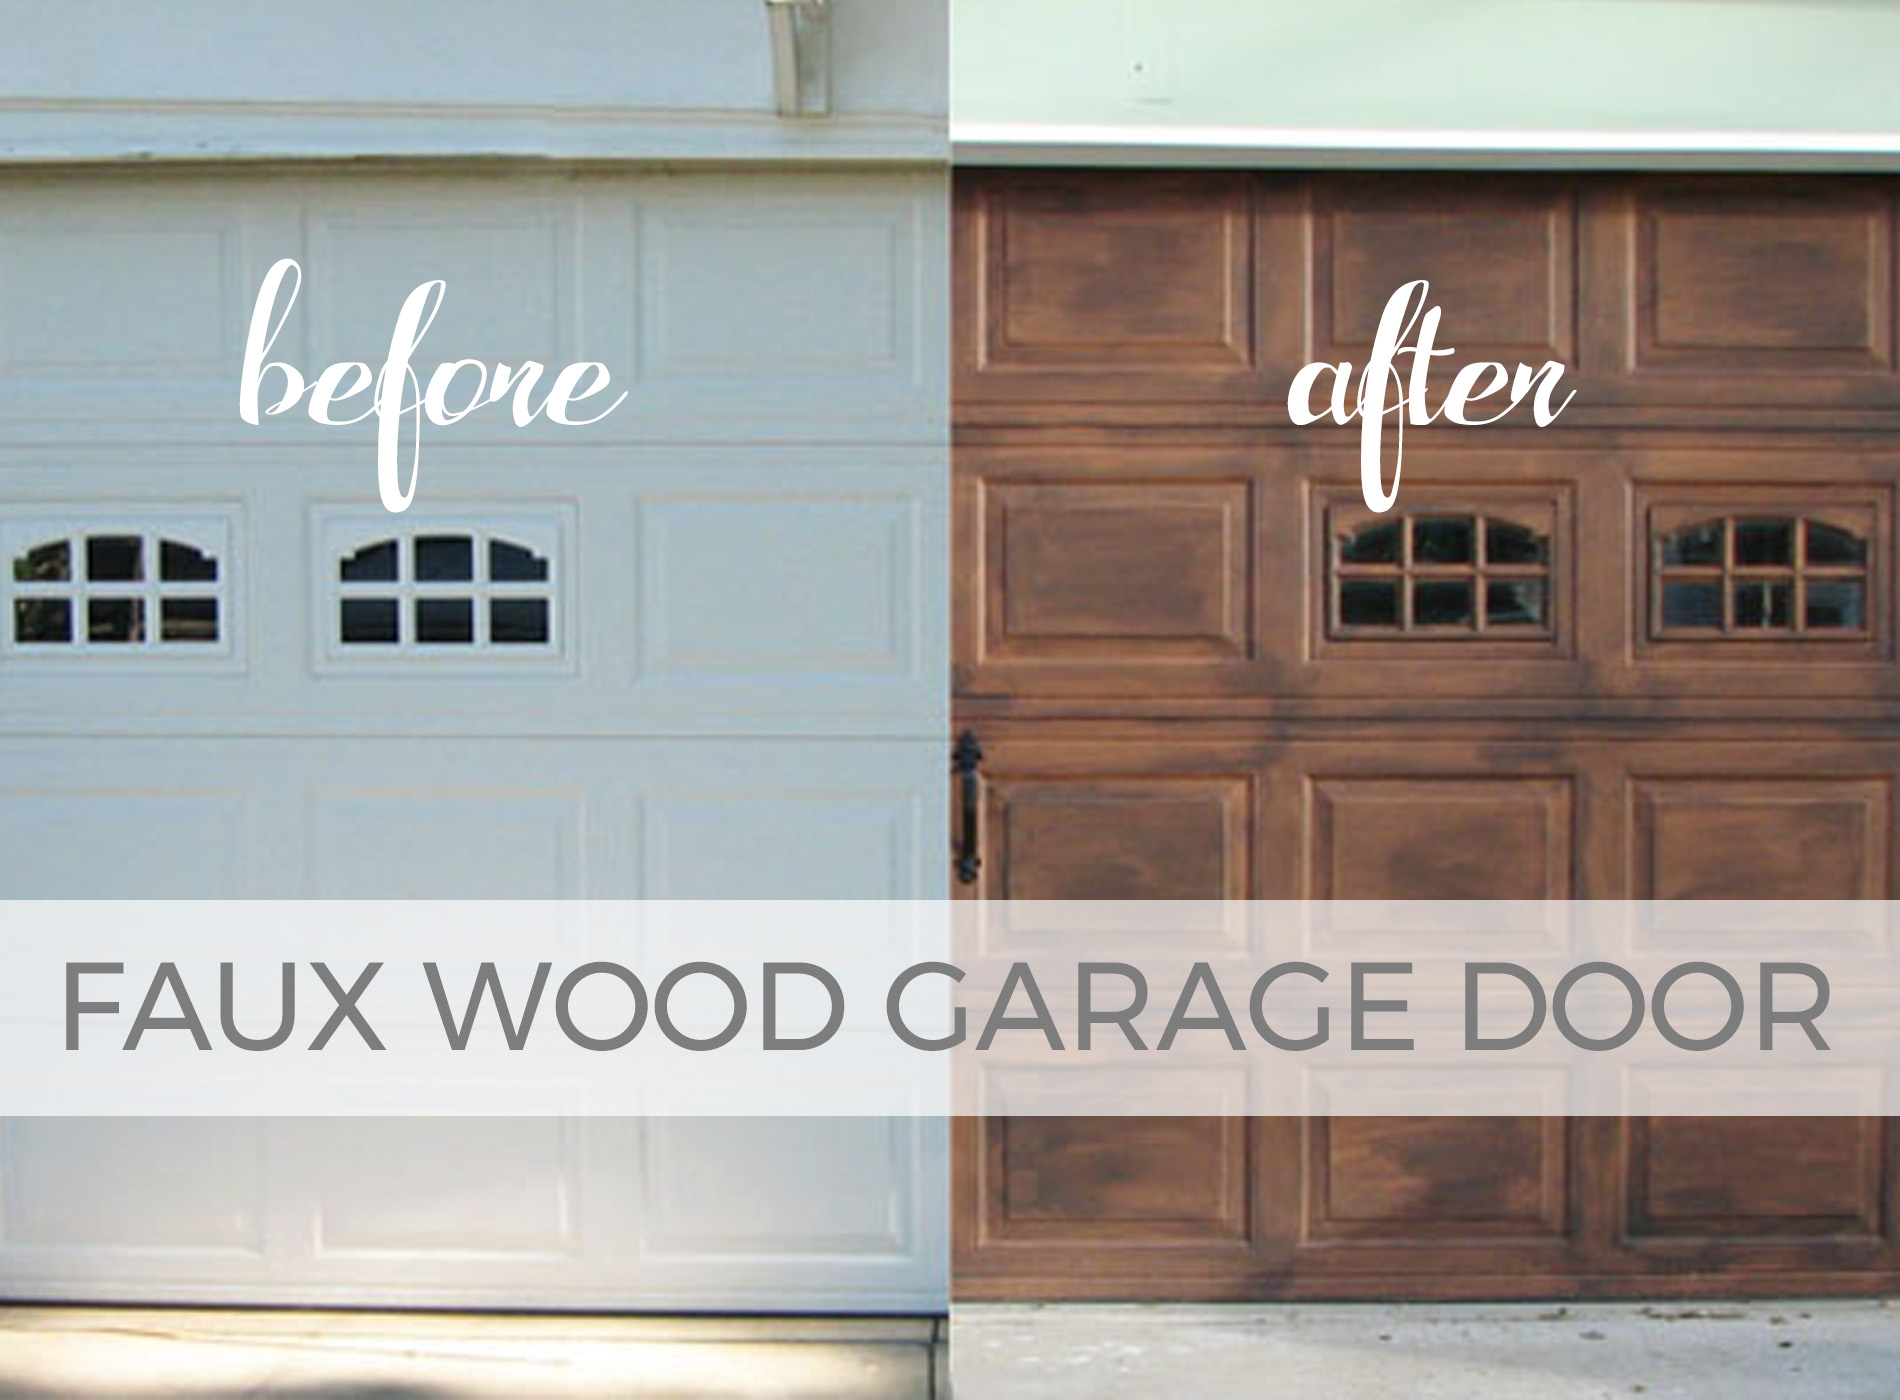 DIY Faux Wood Garage Door Tutorial by Larissa of Prodigal Pieces | prodigalpieces.com #prodigalpieces